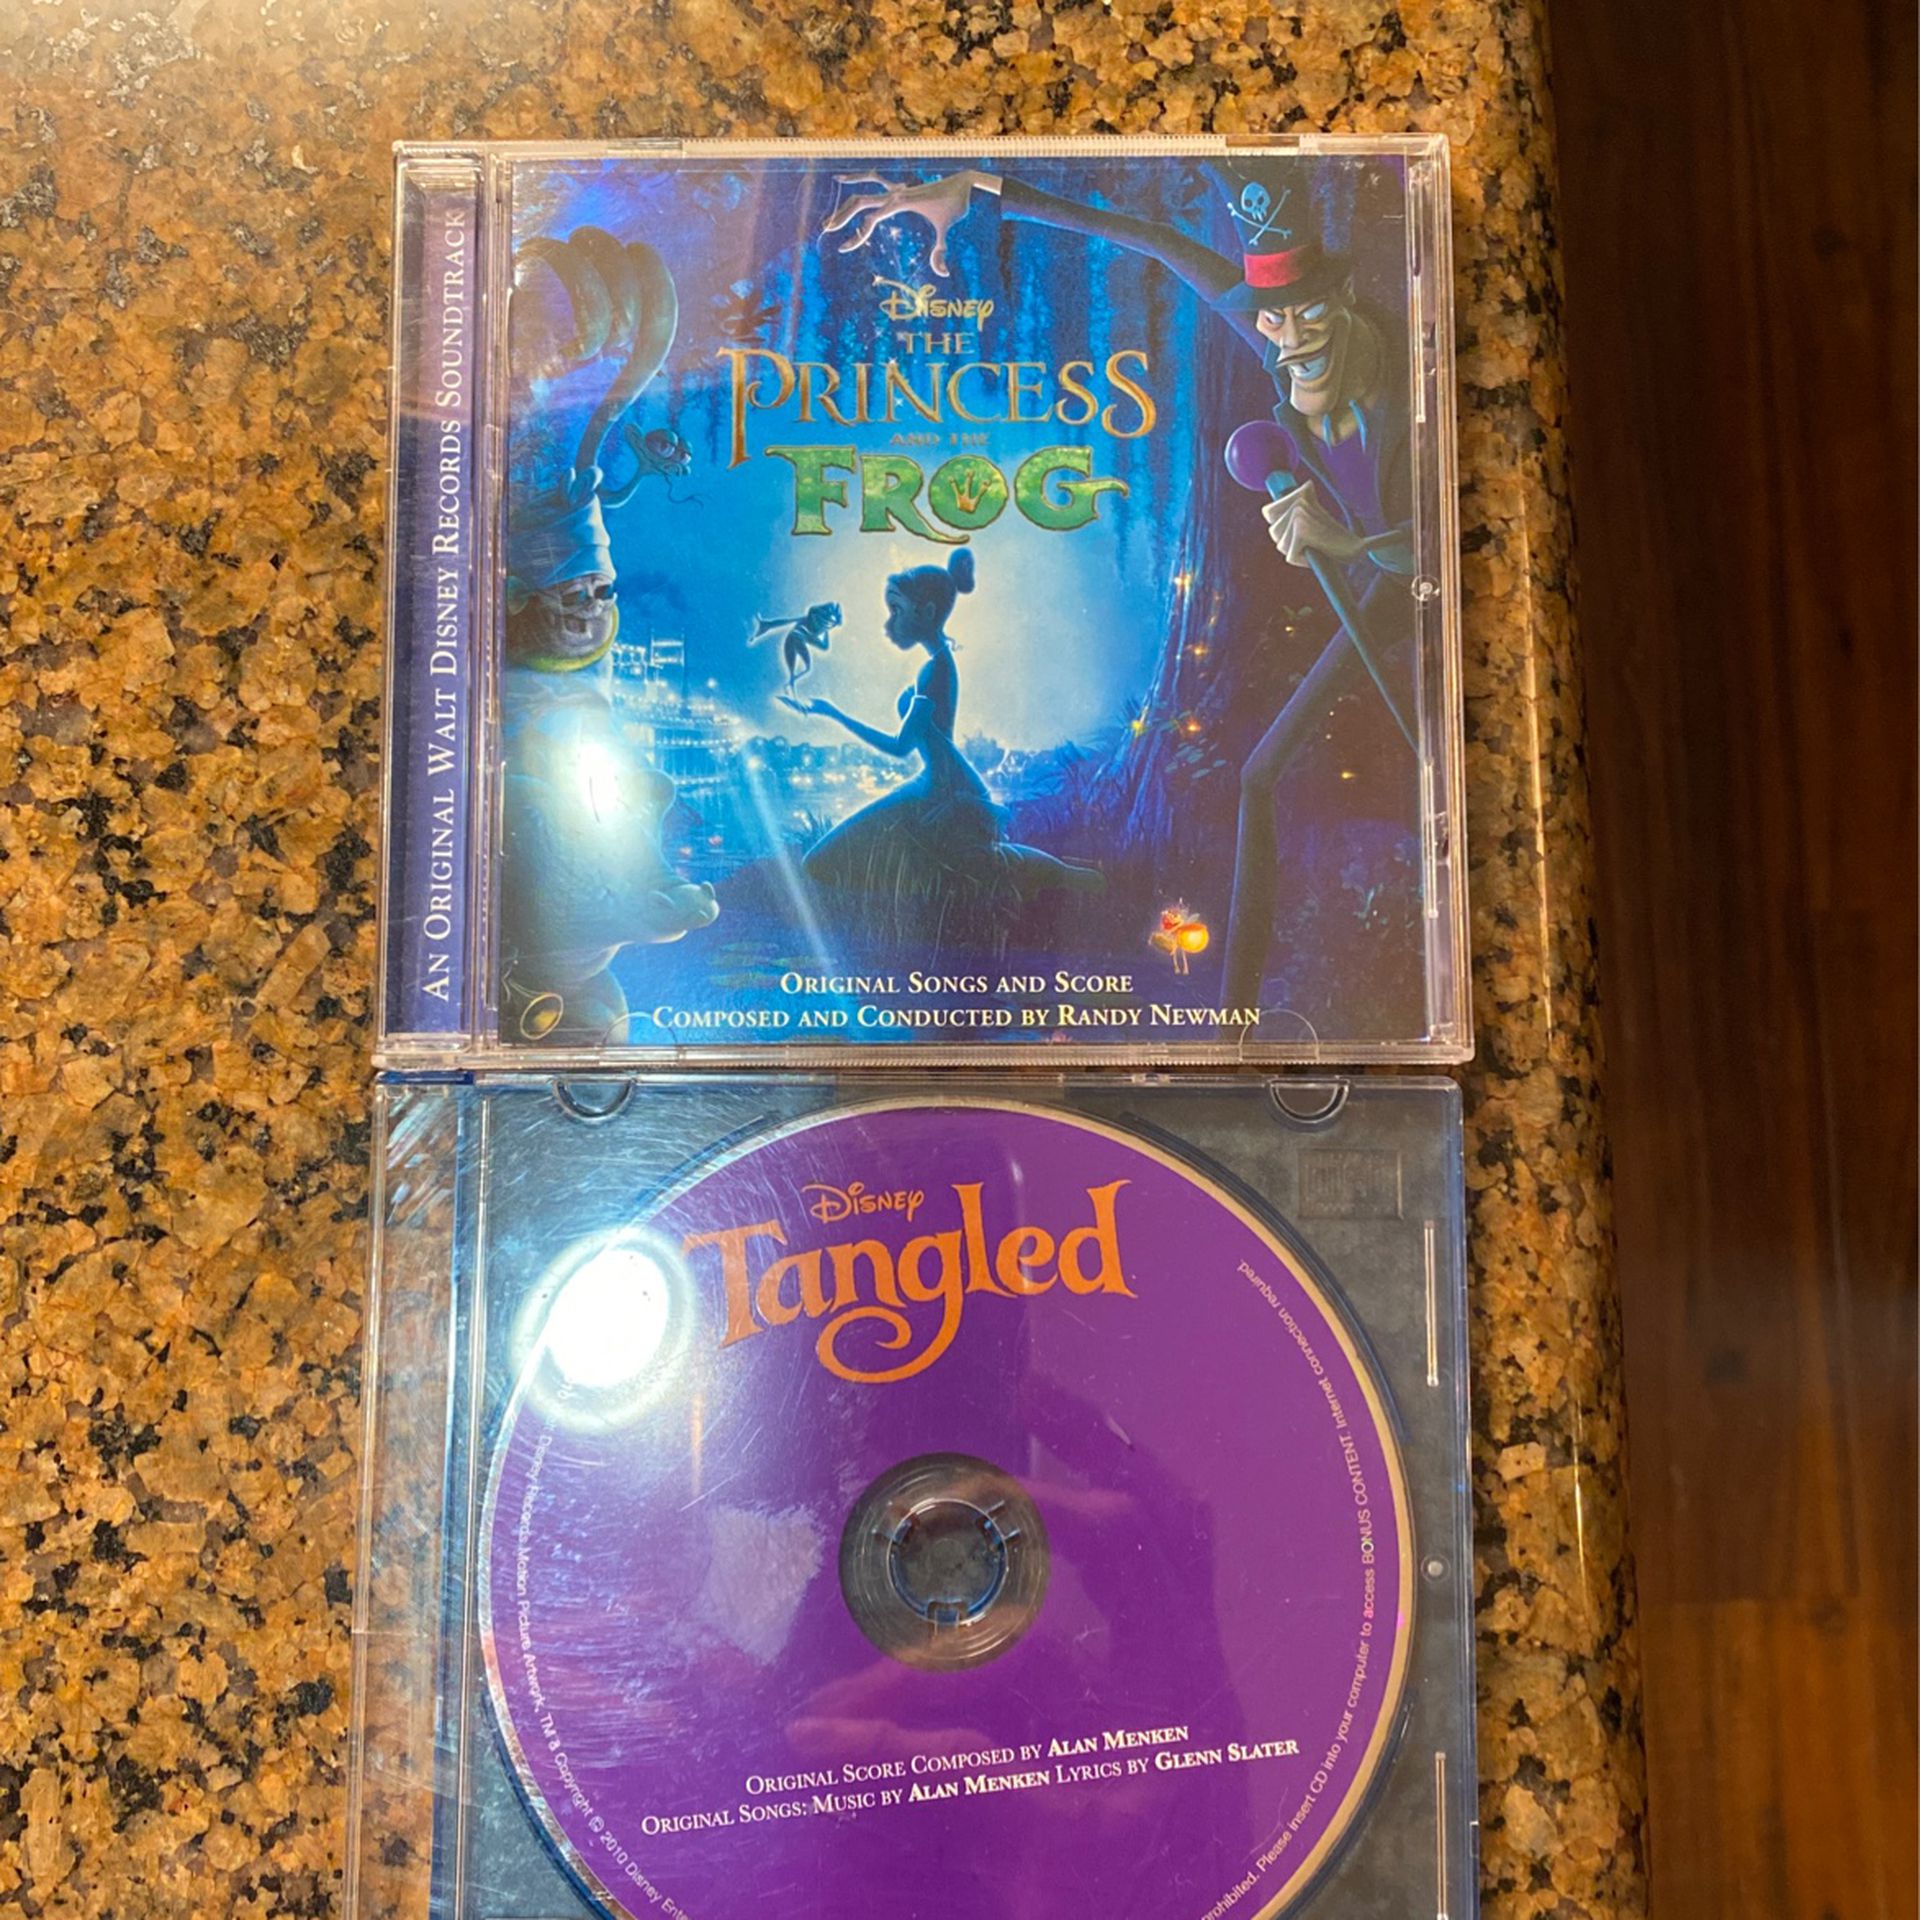 Disney soundtrack CDs